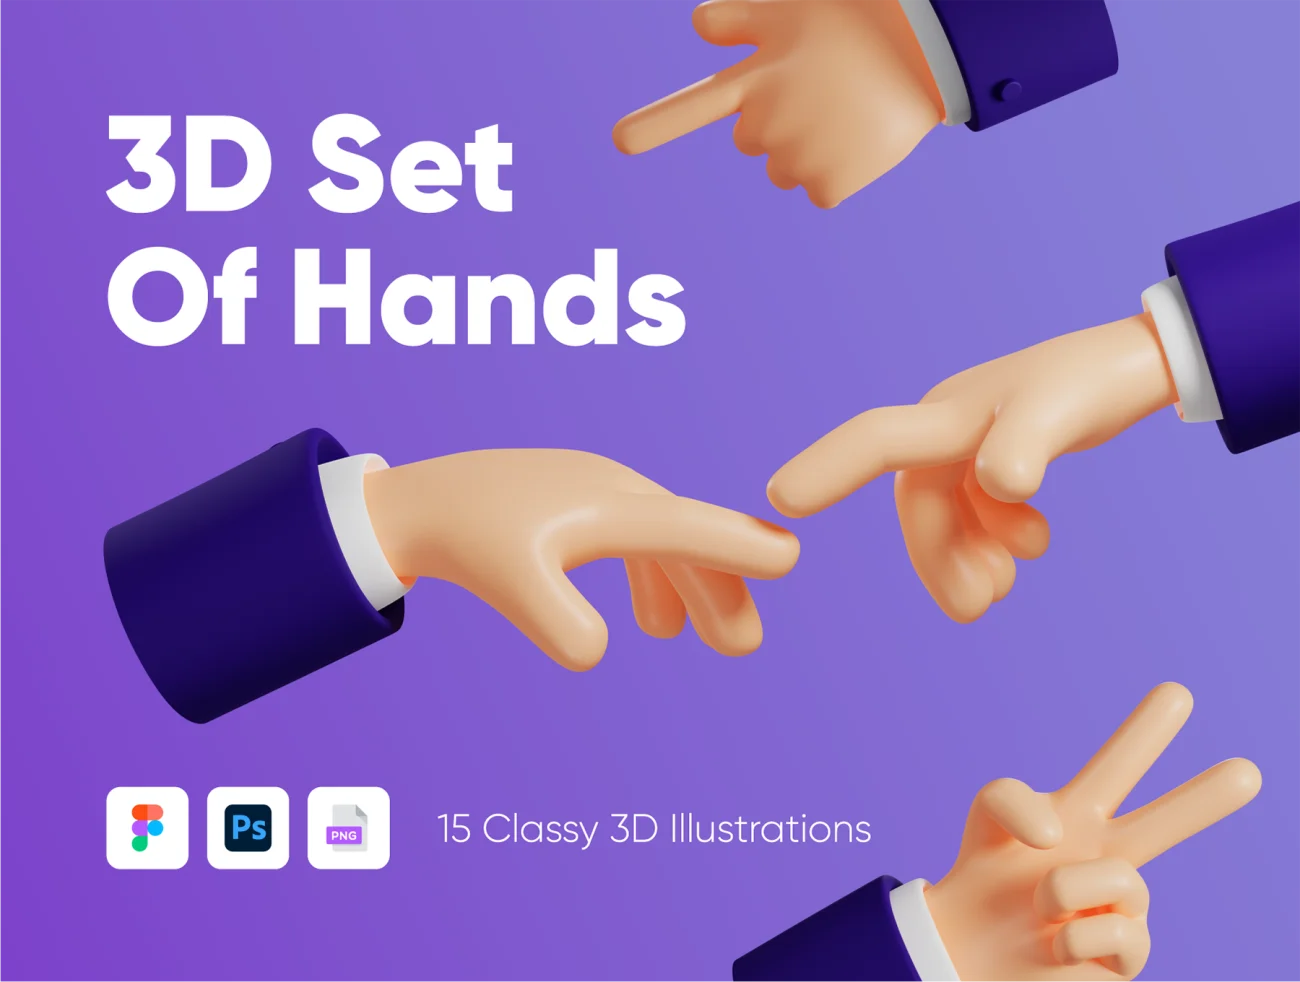 15款胖乎乎的3D手部造型元素插图套件 3D set of hands插图5